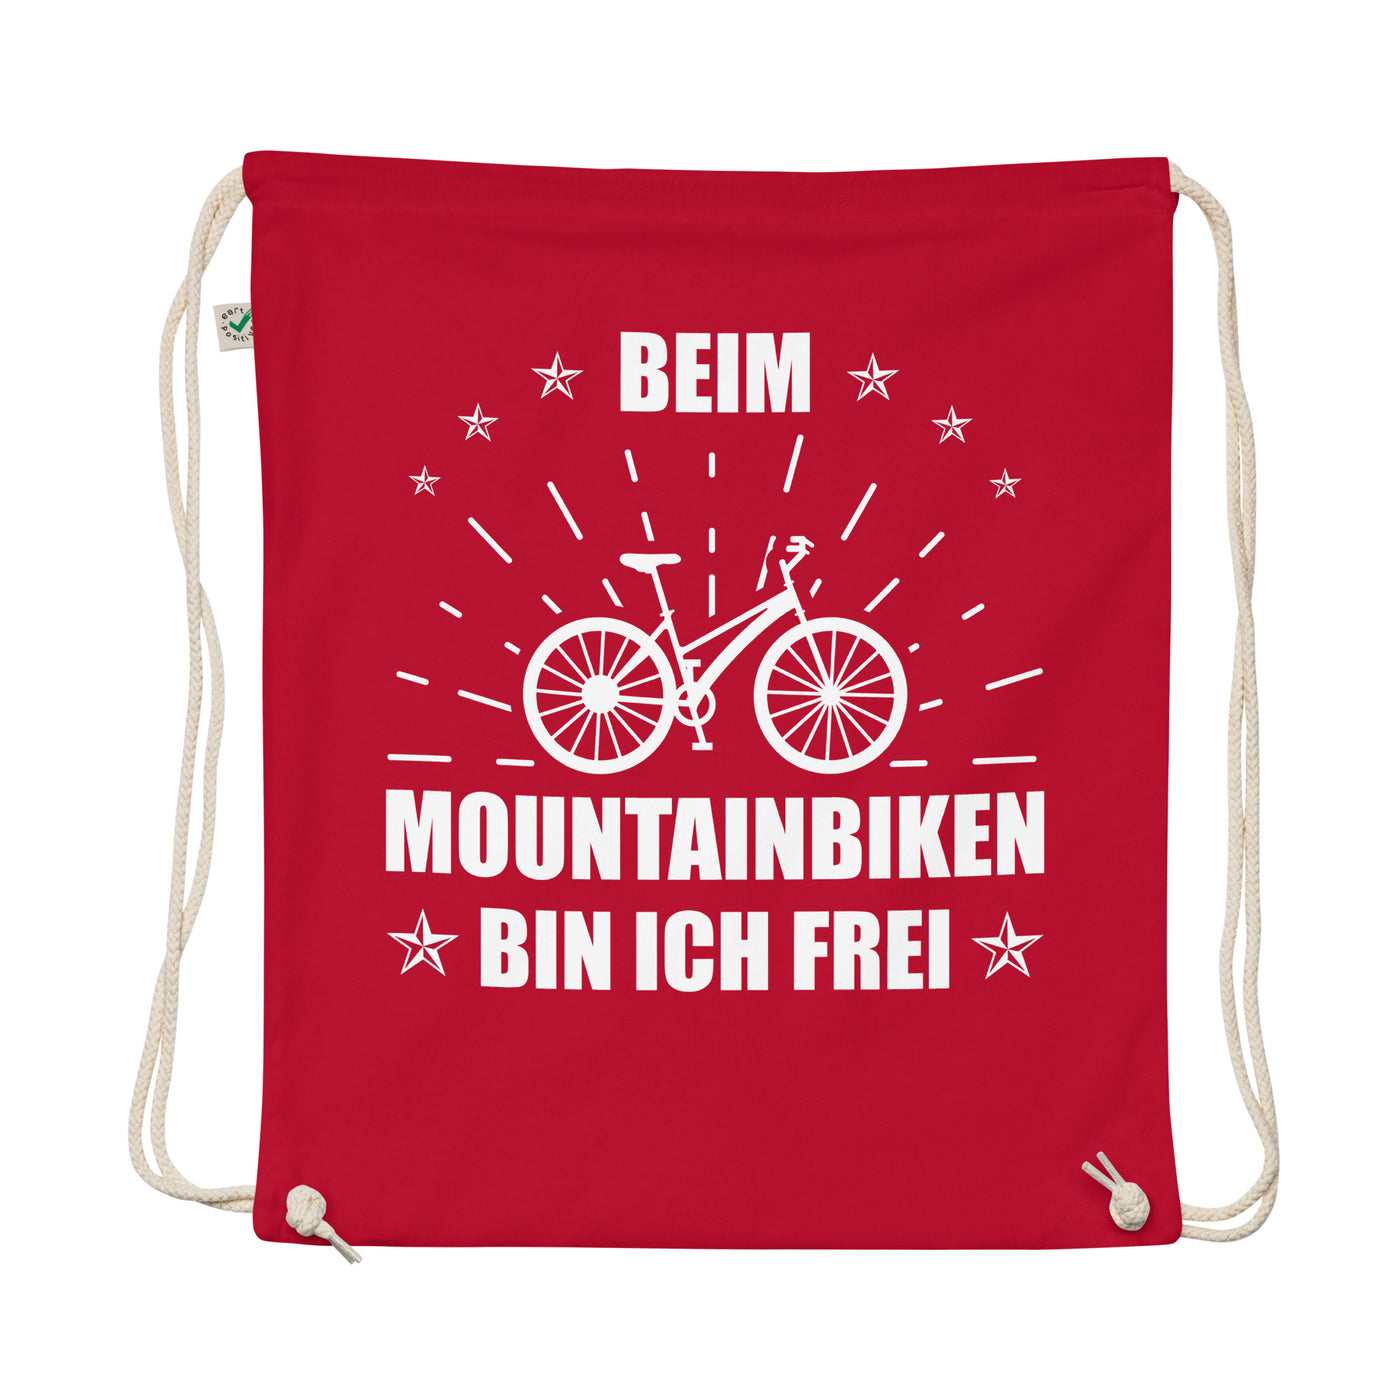 Beim Mountainbiken Bin Ich Frei - Organic Turnbeutel fahrrad